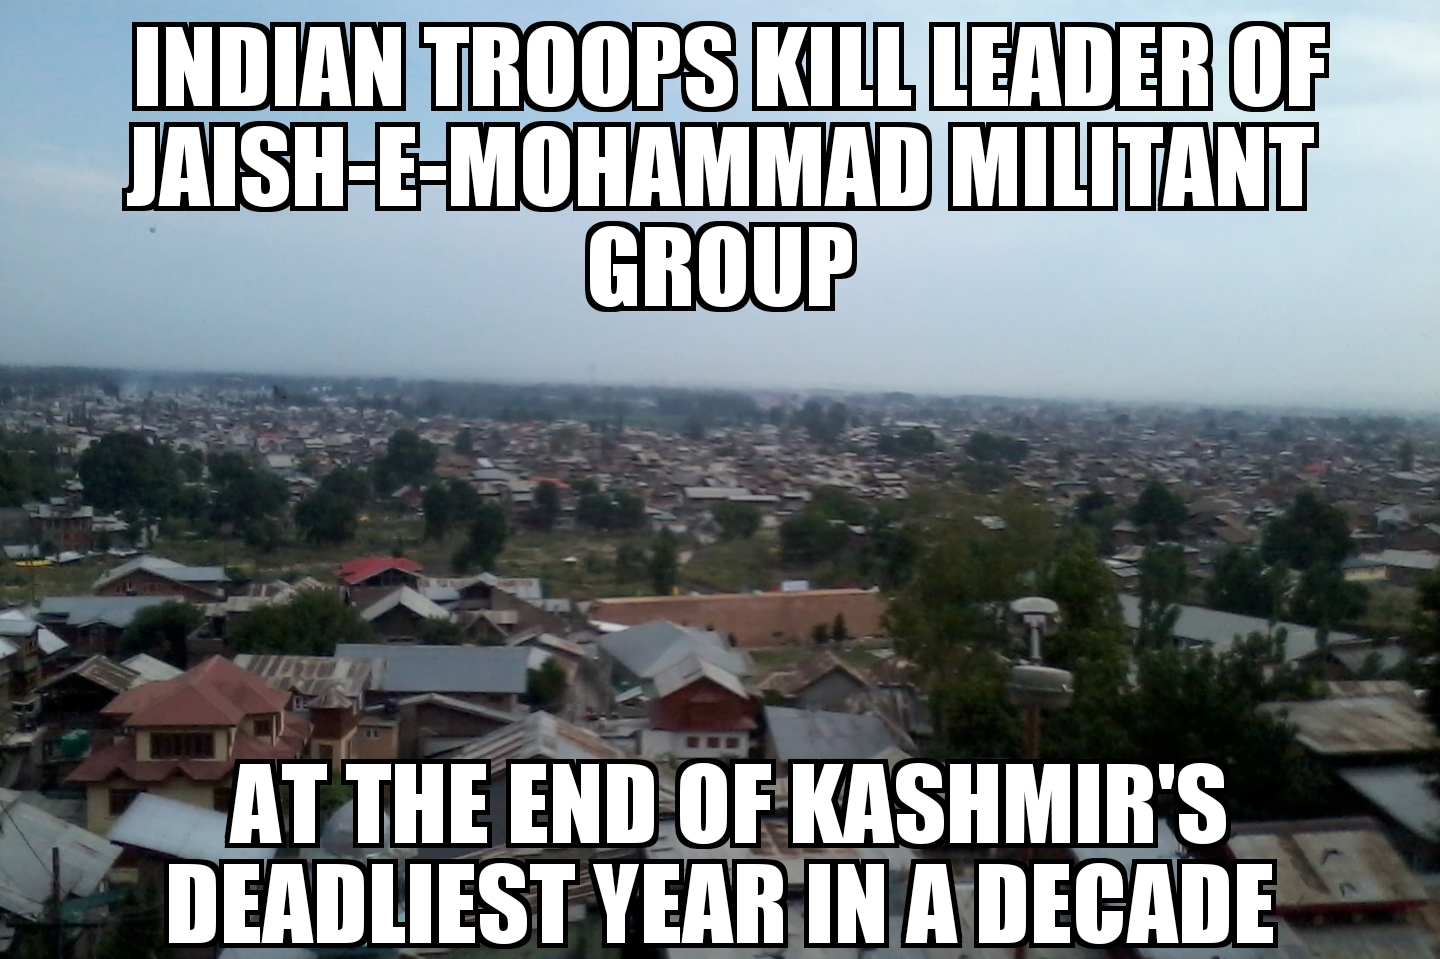 Indian troops kill Jaish-e-Mohammad leader